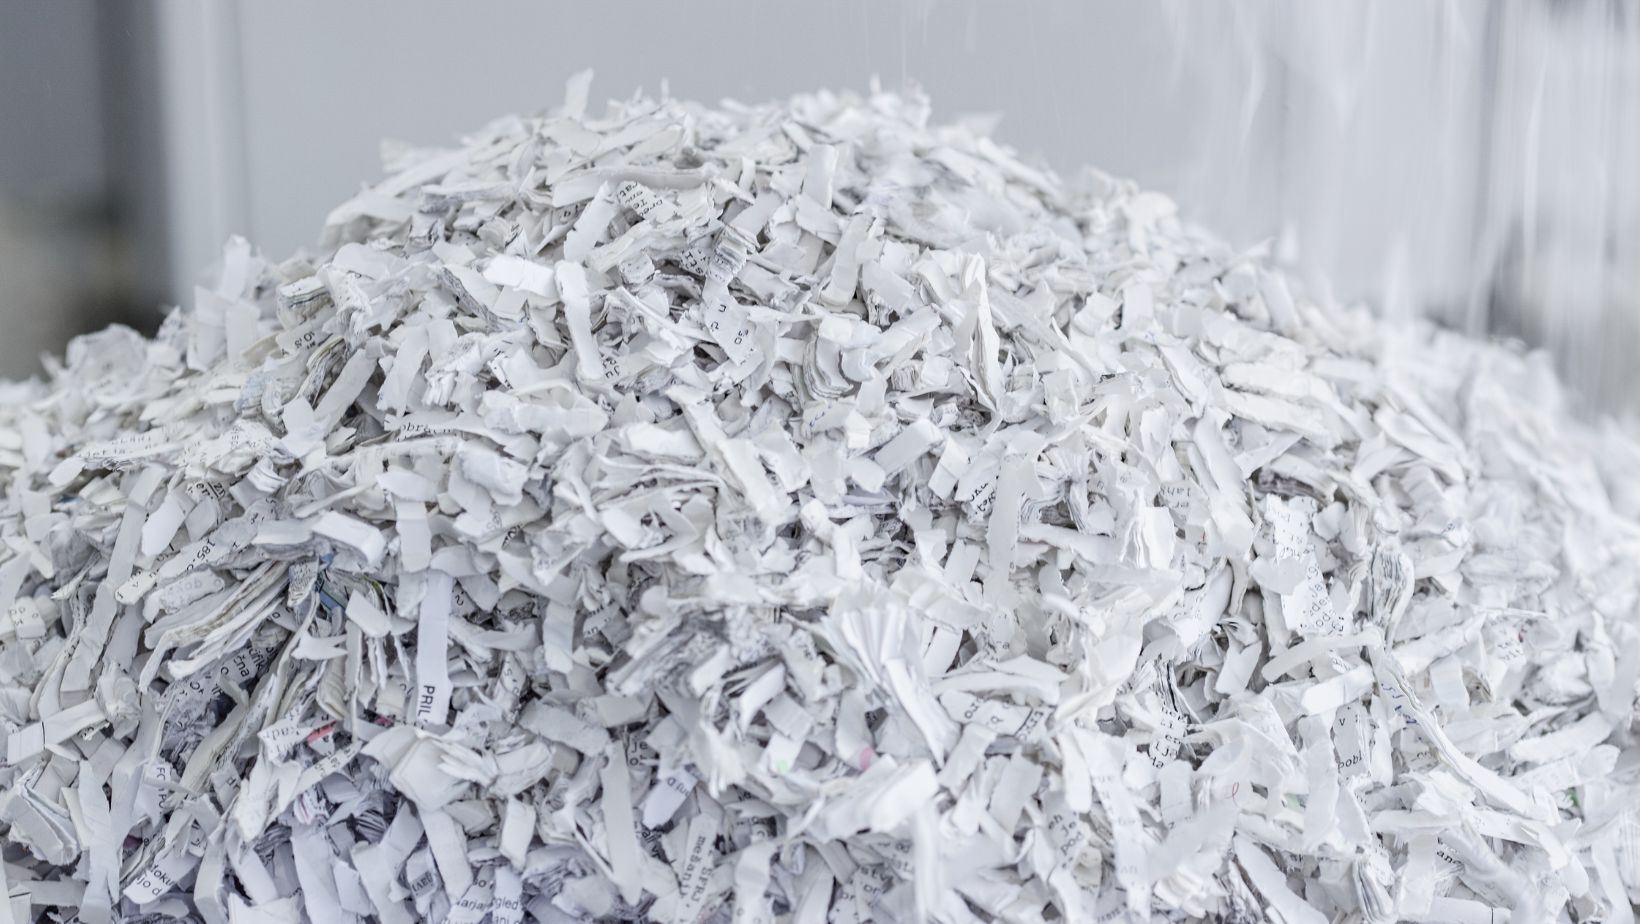 5 Common Document Shredding Mistakes Businesses Make